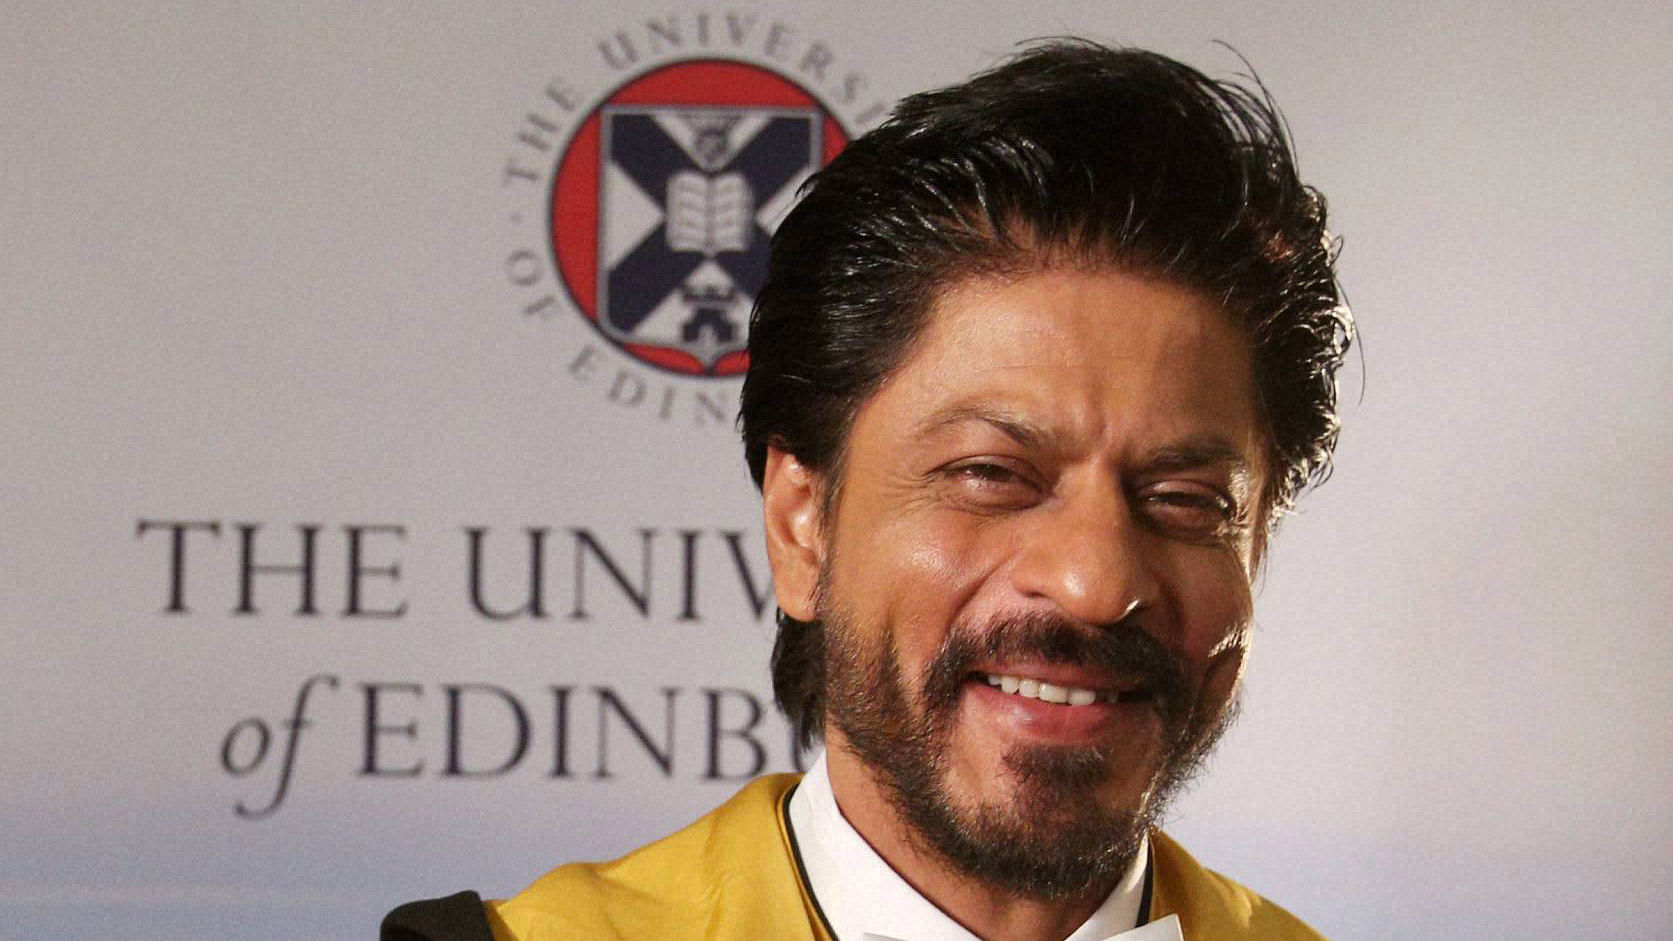 Shah Rukh Khan at the Edinburgh University in Britain. (Photo: PTI)